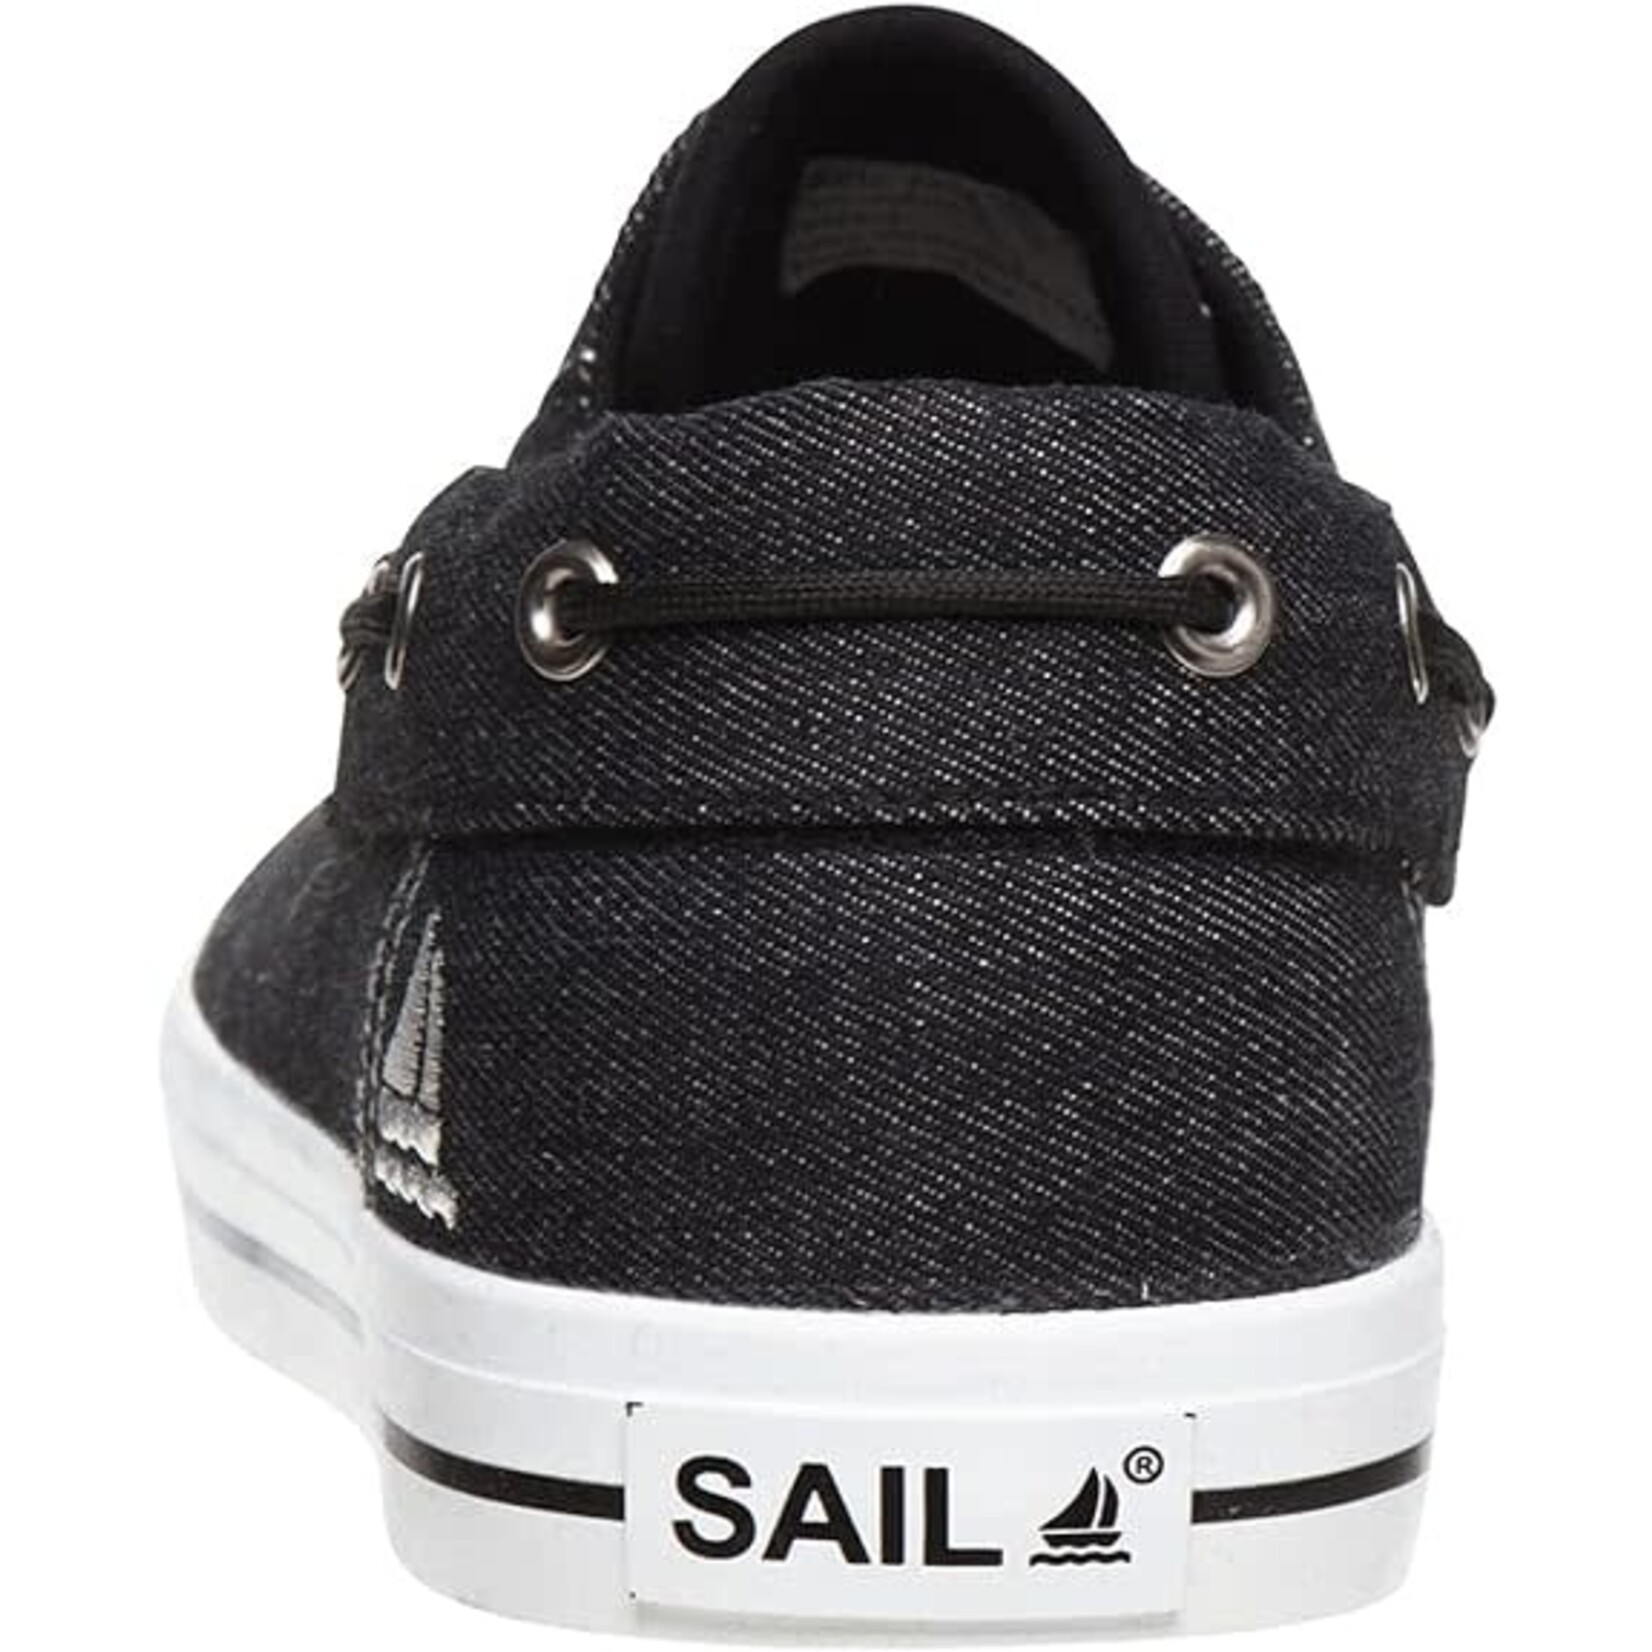 Sail Sail Men's Moc Toe Boat Sneaker - AHOY